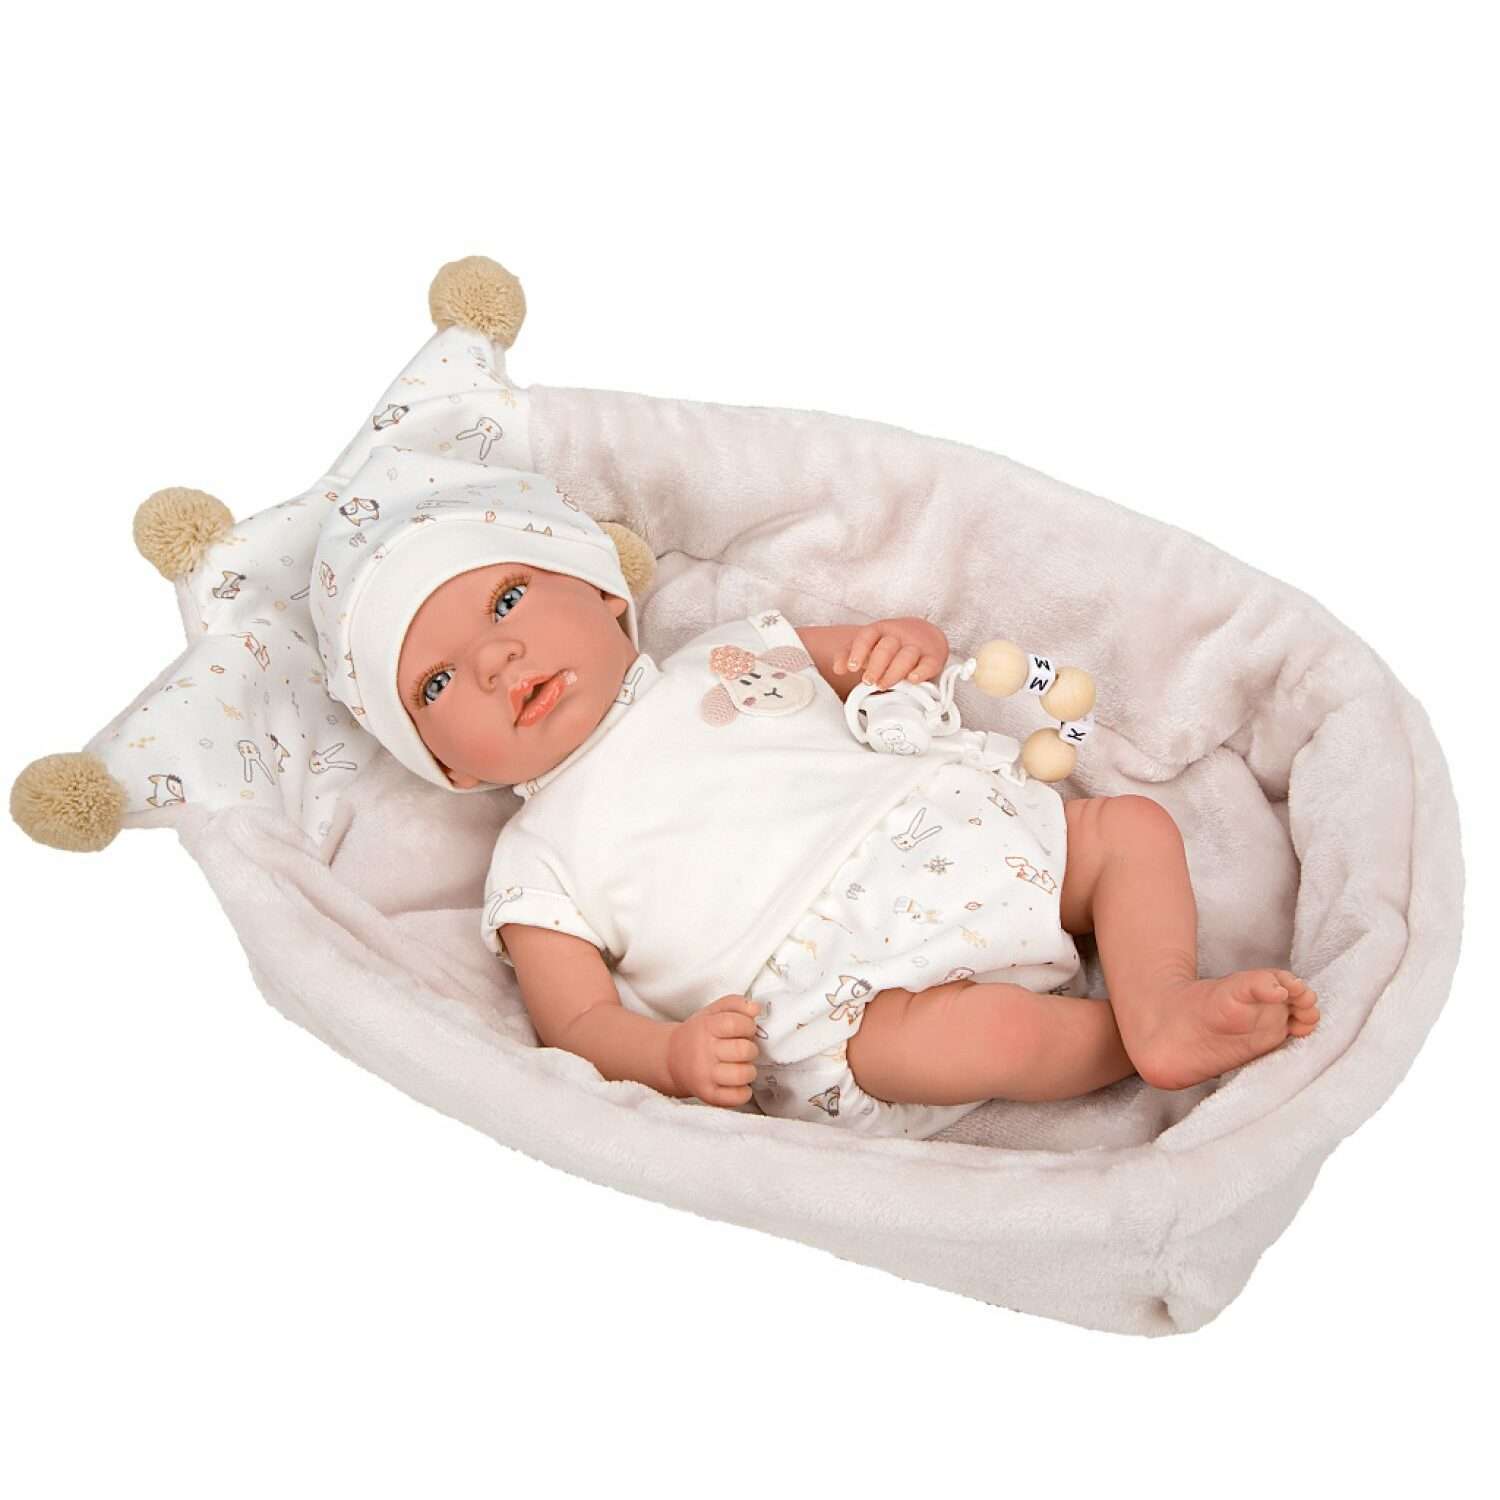 Кукла Arias Reborns Aday новорожденный пупс мягкий 40 см реалистичный с люлькой переноской Т22937 - фото 1